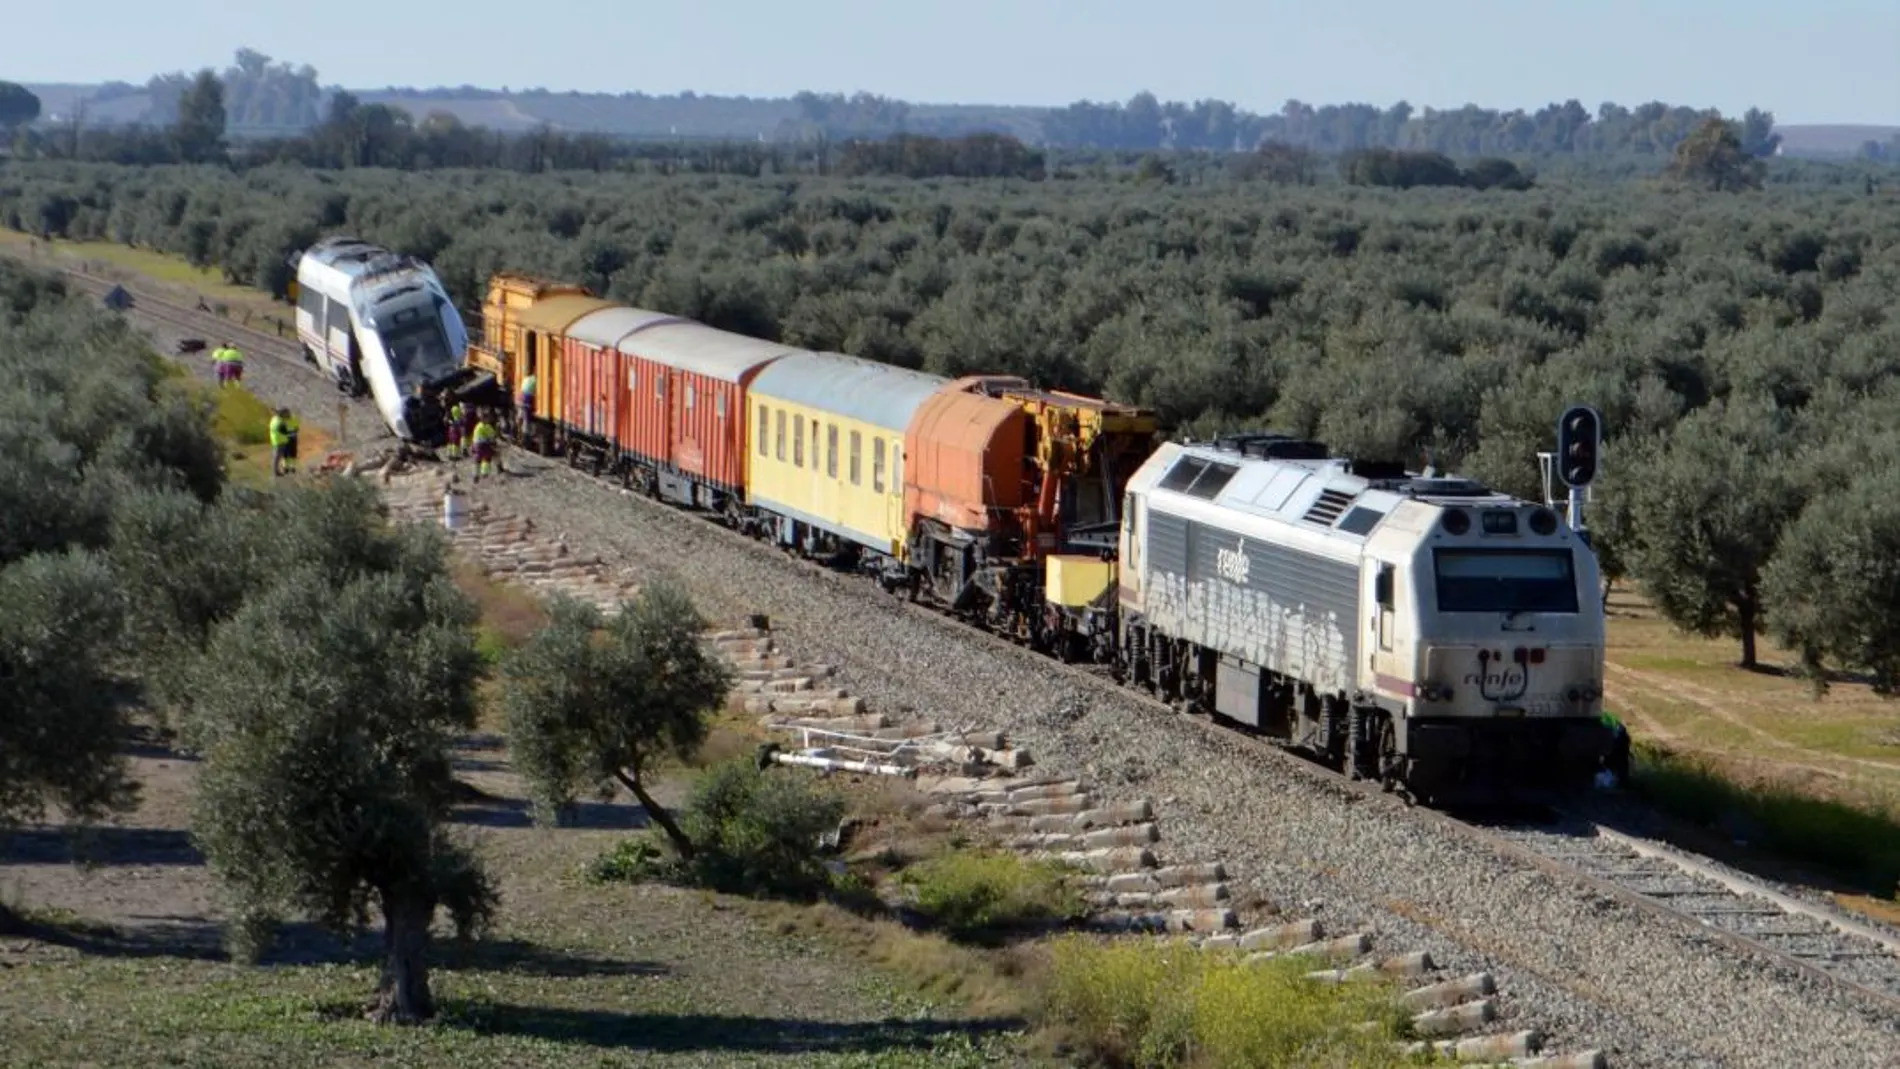 Técnicos de Adif han conseguido que un tren taller llegue a la altura del convoy siniestrado el pasado miércoles en Arahal (Sevilla), tras haber reparado de urgencia el trazado